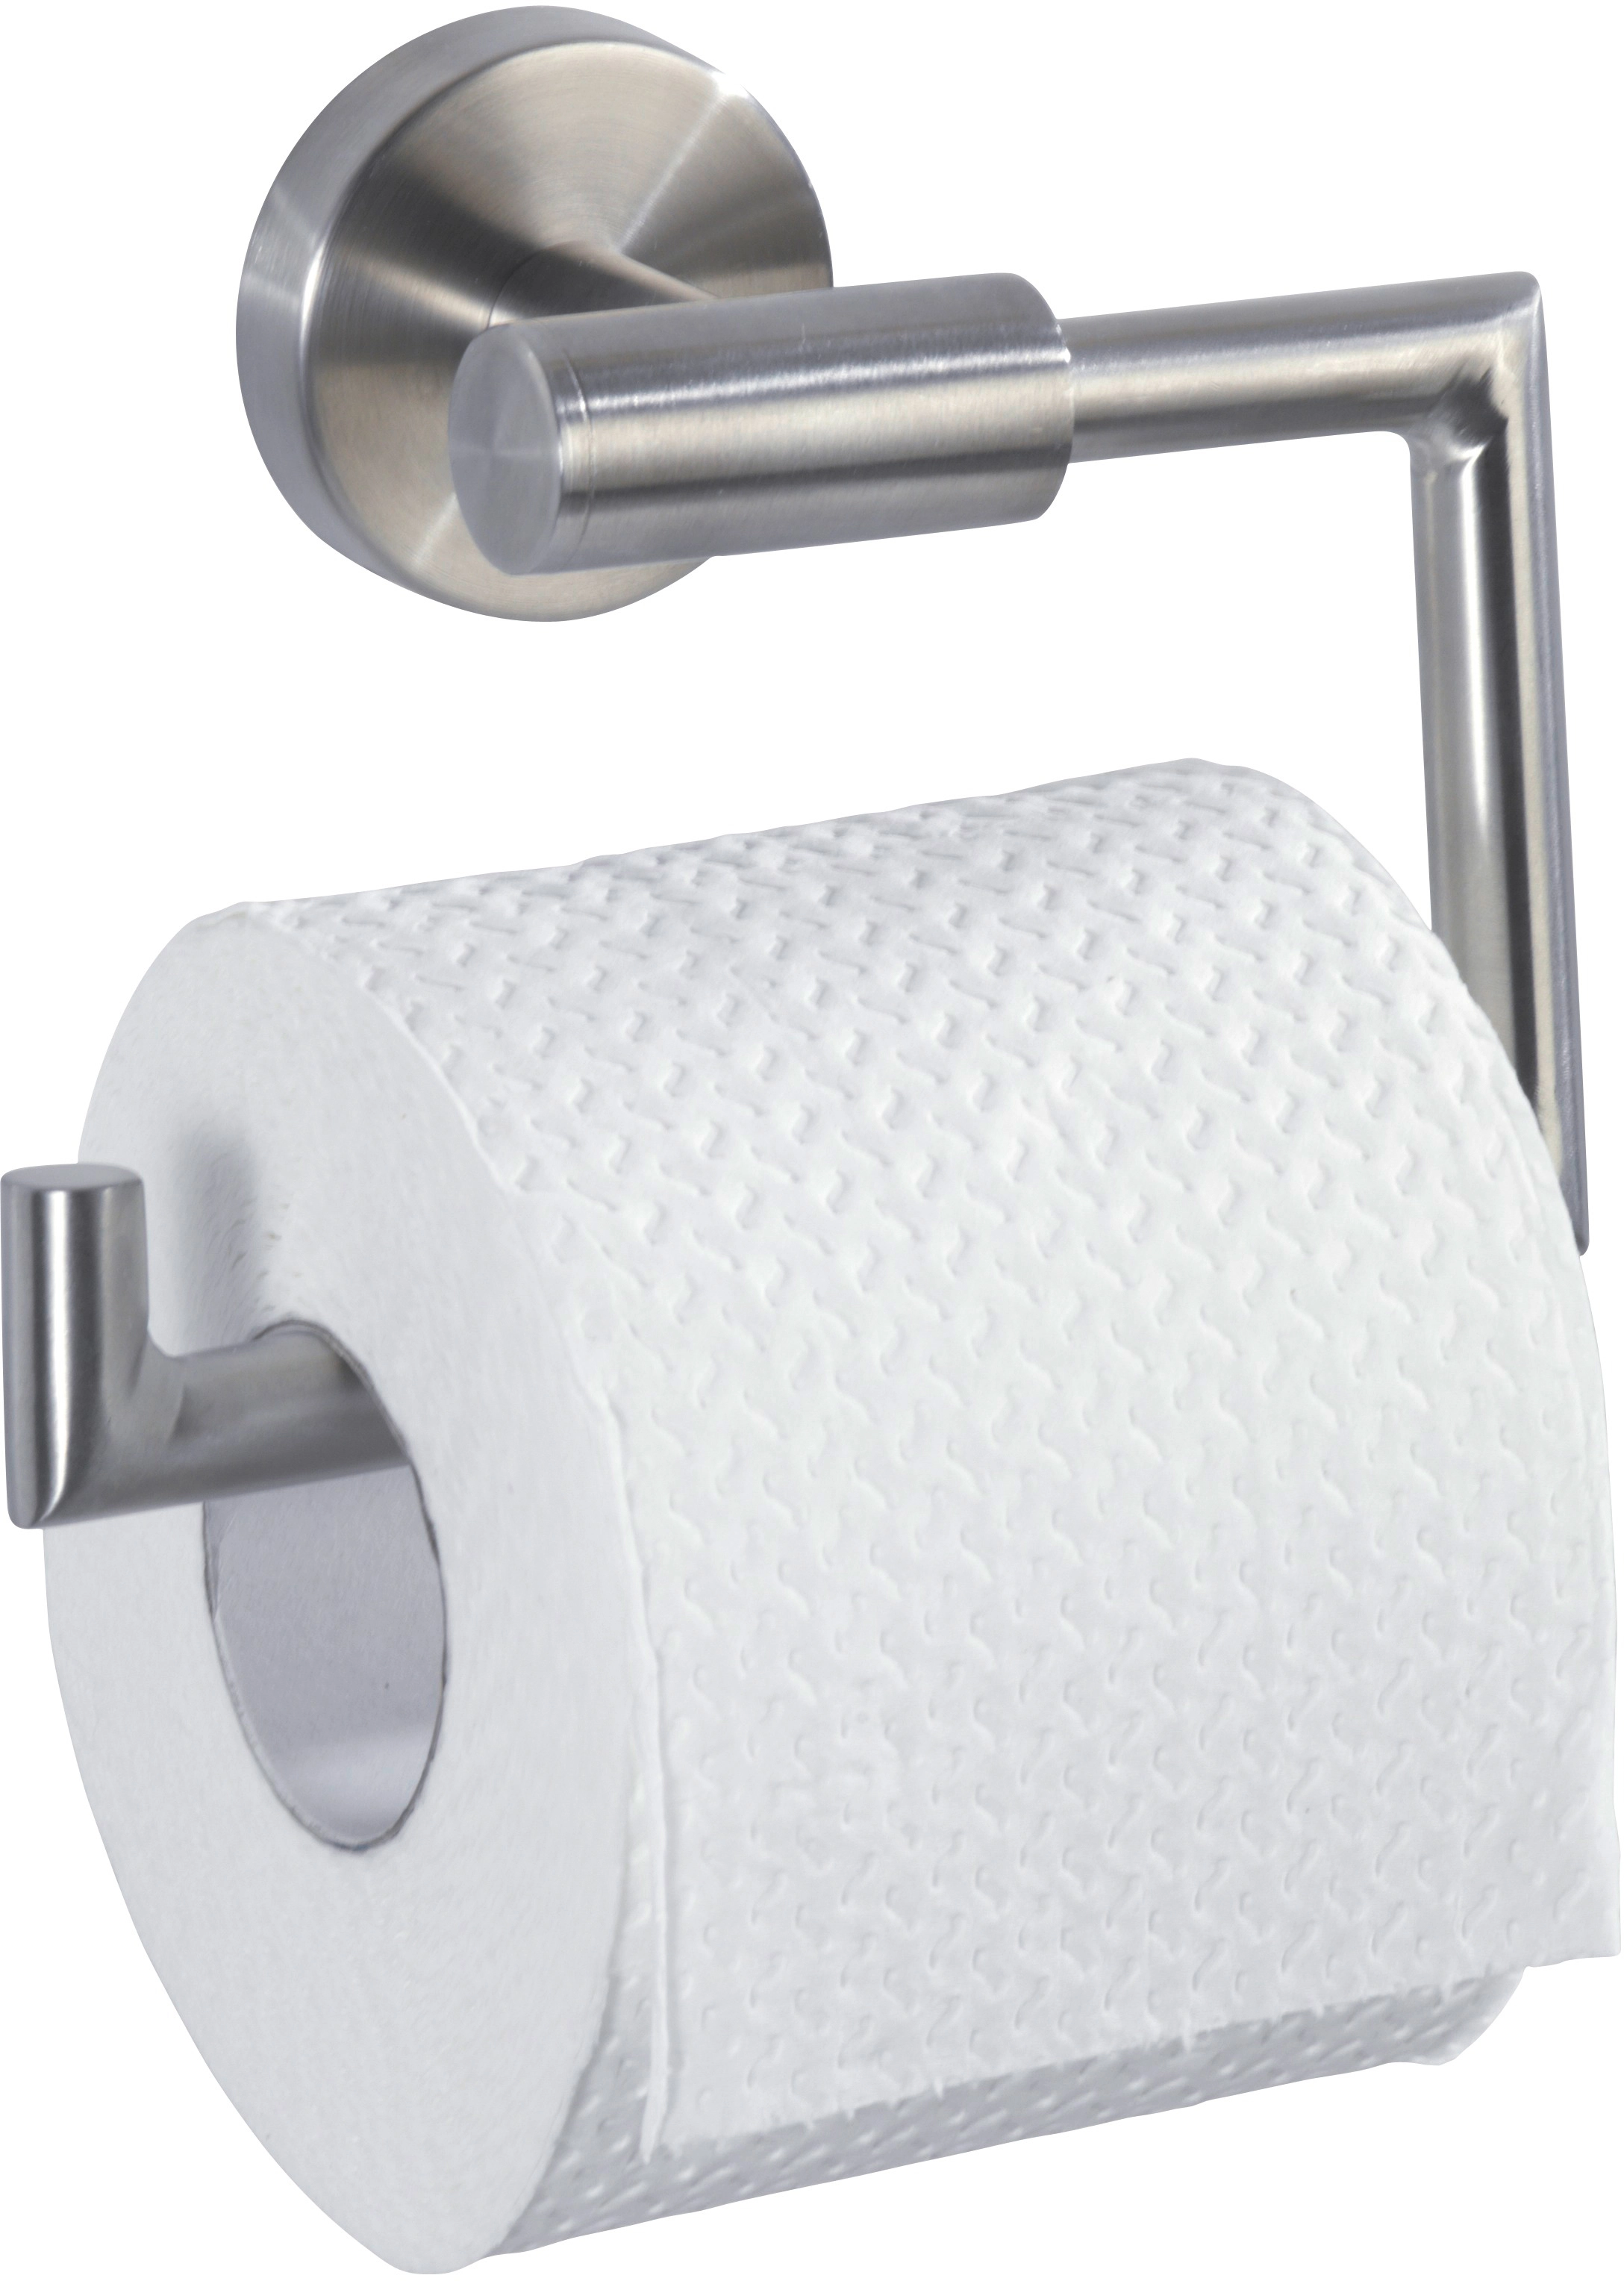 Wenko Toilettenpapierhalter Bosio Silber Matt 10,5 cm x 15 cm x 6,5 cm  kaufen bei OBI